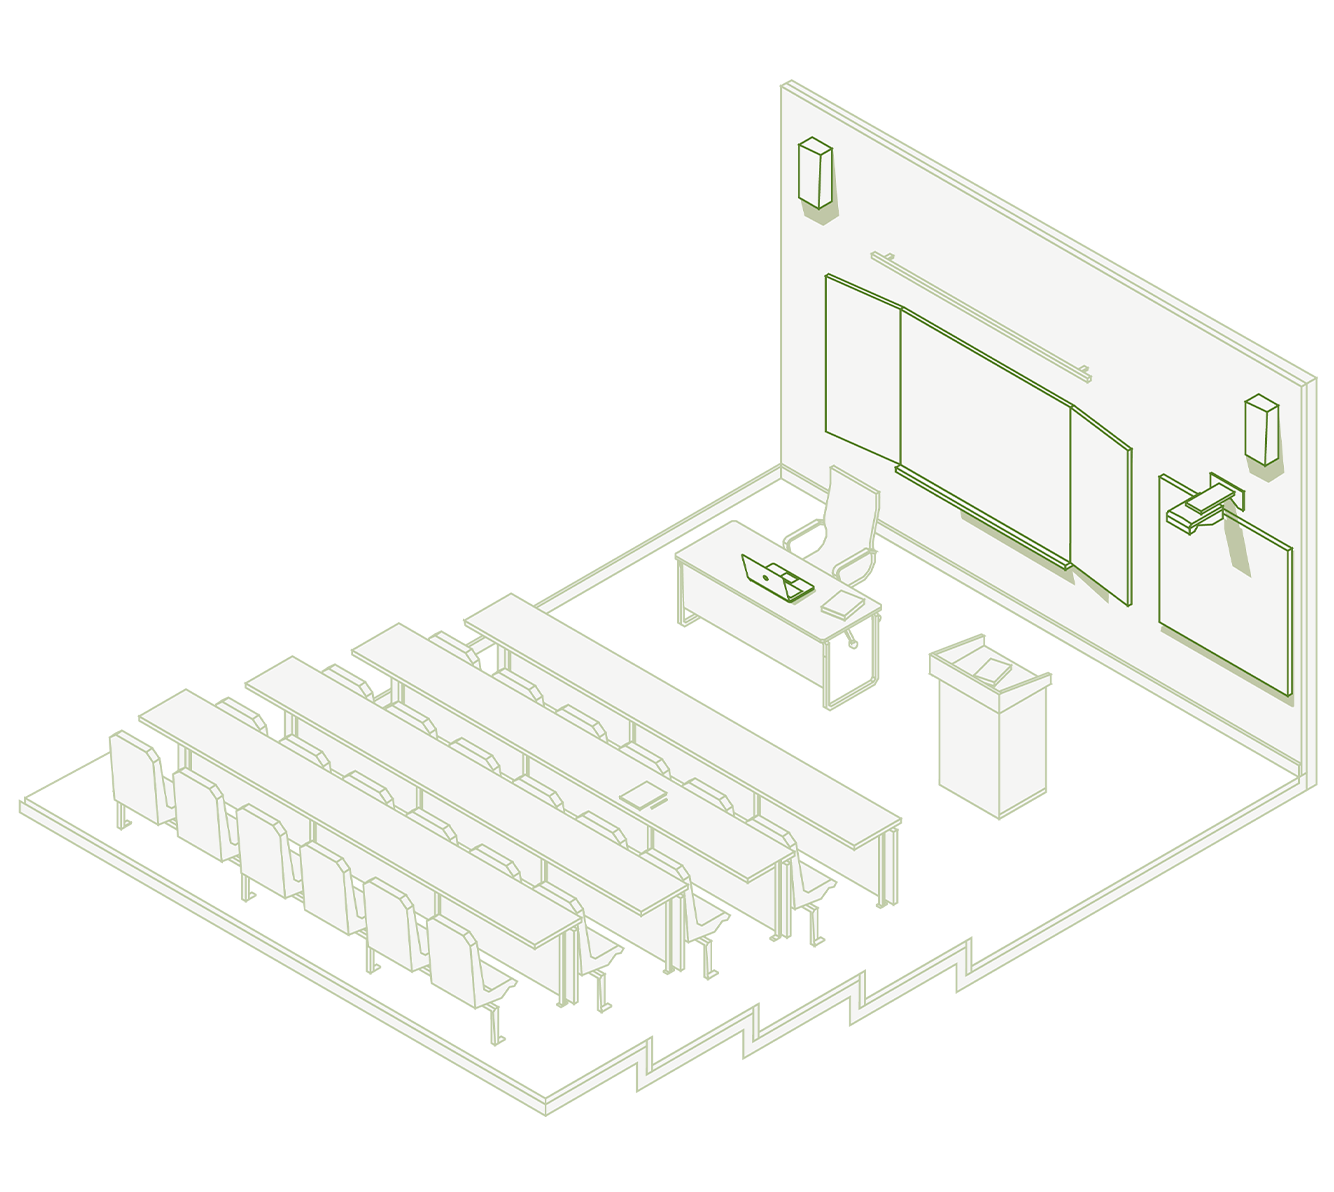 Illustrazione isometrica di una sala per videoconferenze con impianto audio-video composto da schermo grande formato e casse